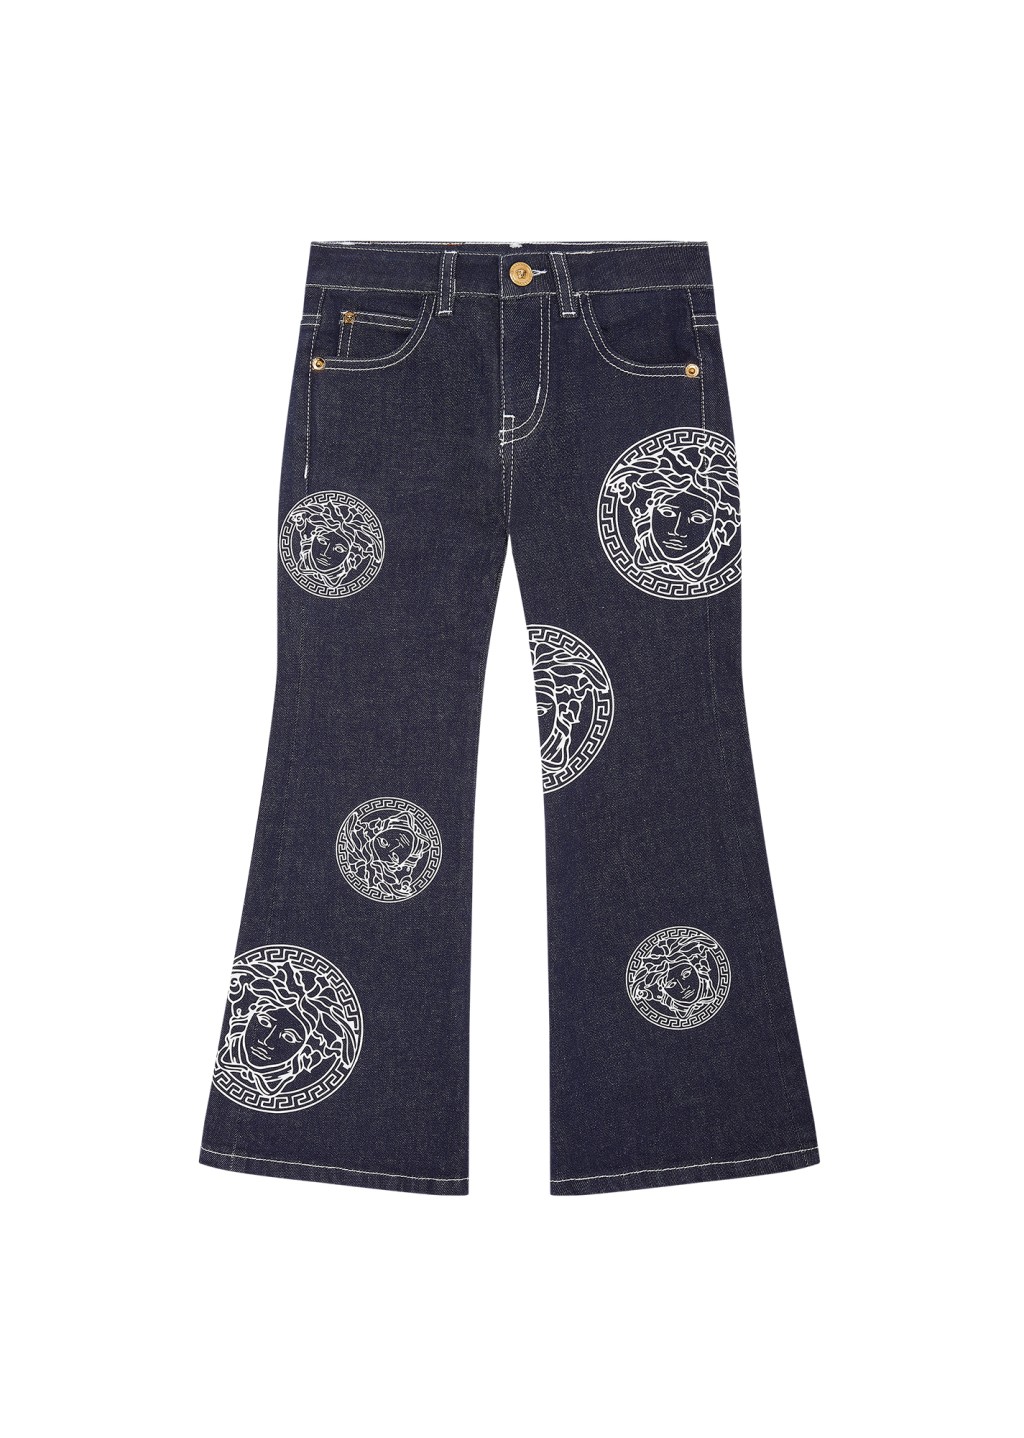 复古的阔脚牛仔裤/$2,400至$2,600/V，裤管饰以标志性的Medusa图案，吸睛又抢眼。